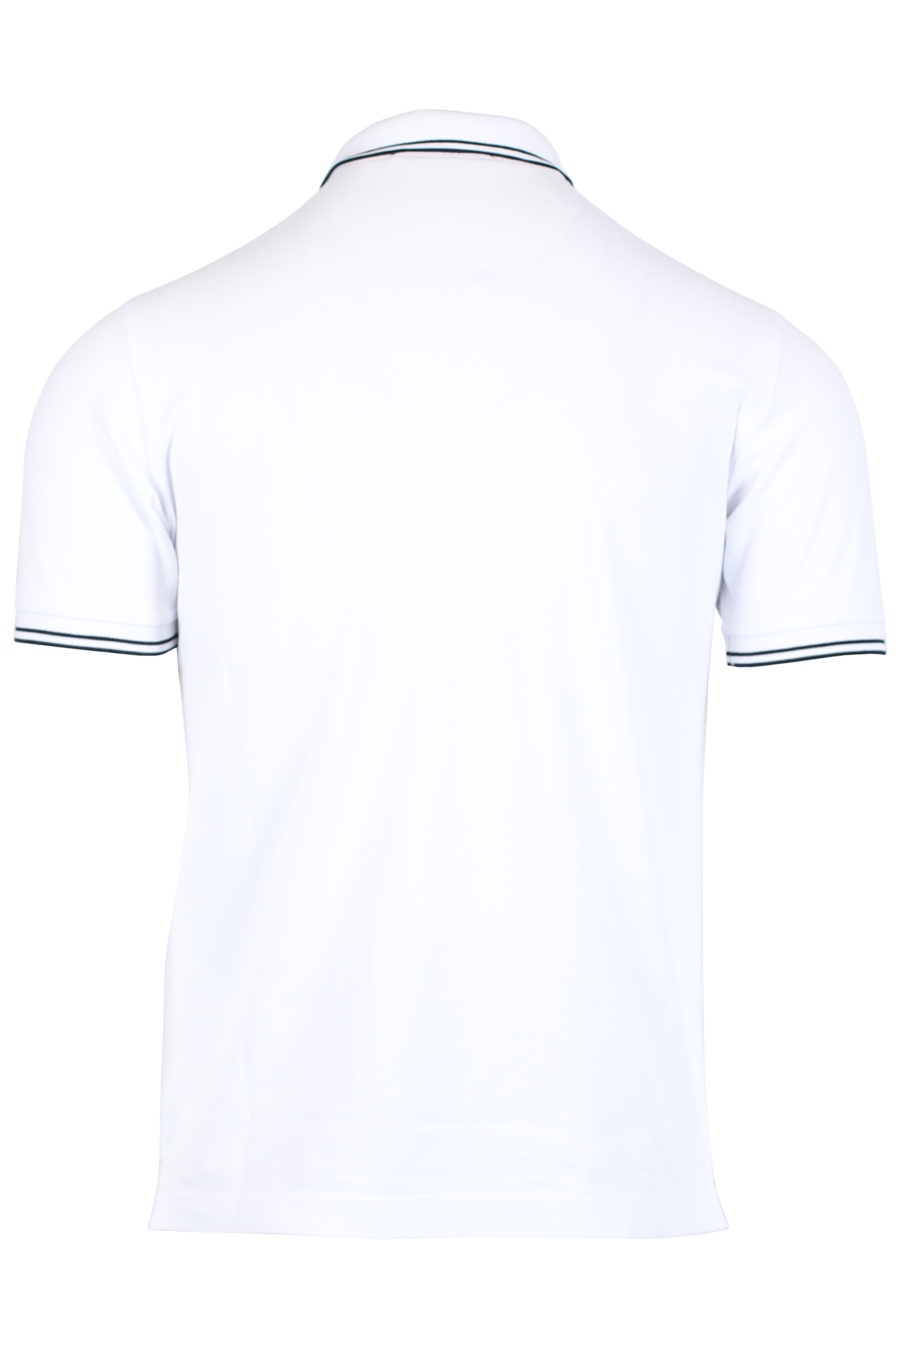 Weißes Poloshirt mit Streifen am Kragen - IMG 2482